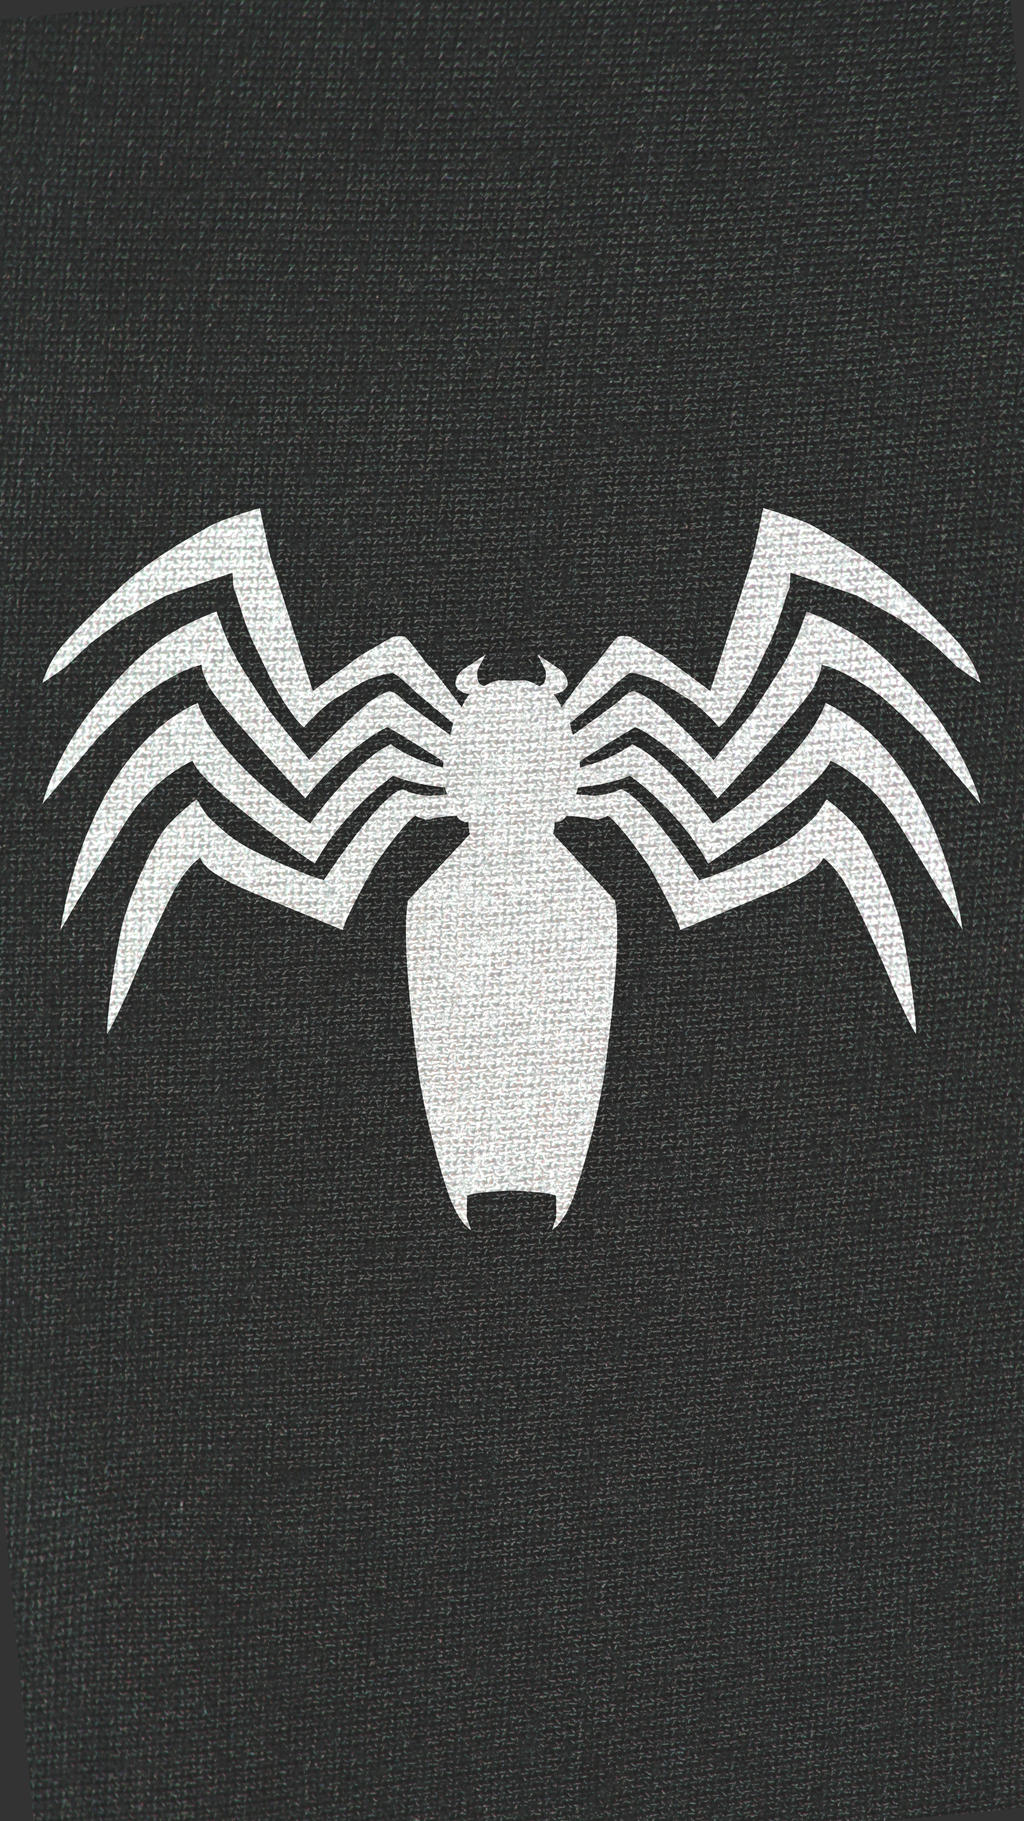 Spider Man Venom Logo Wallpaper With Texture By